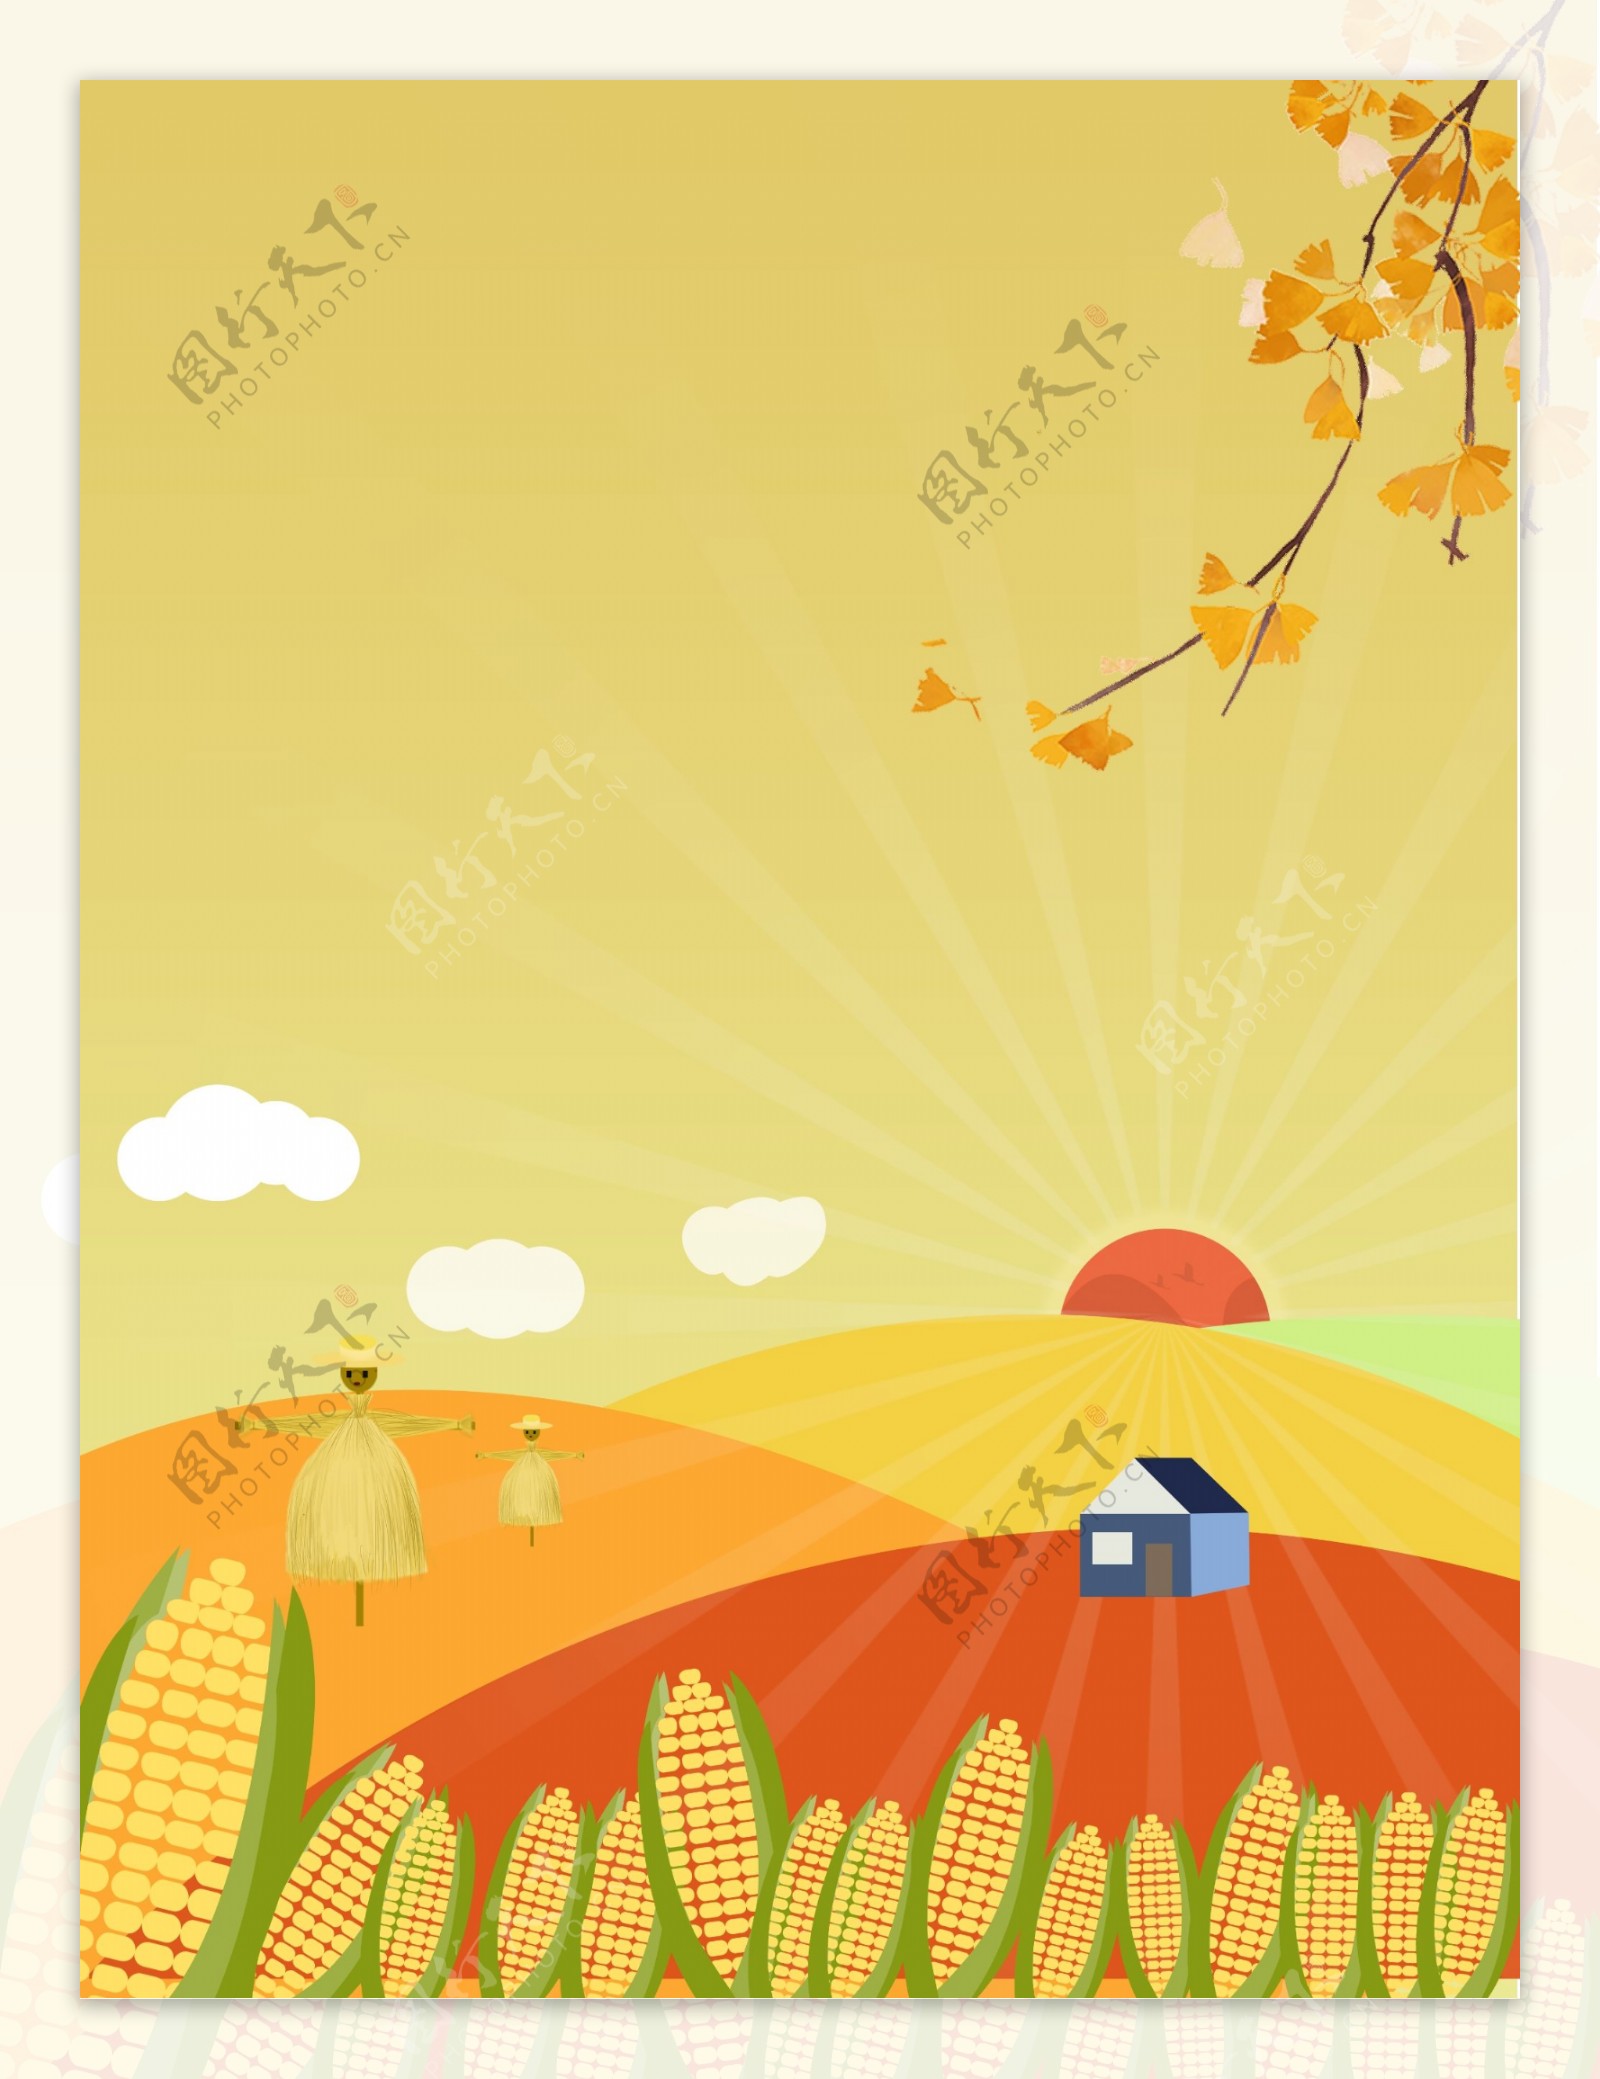 中国农民丰收节展板背景设计